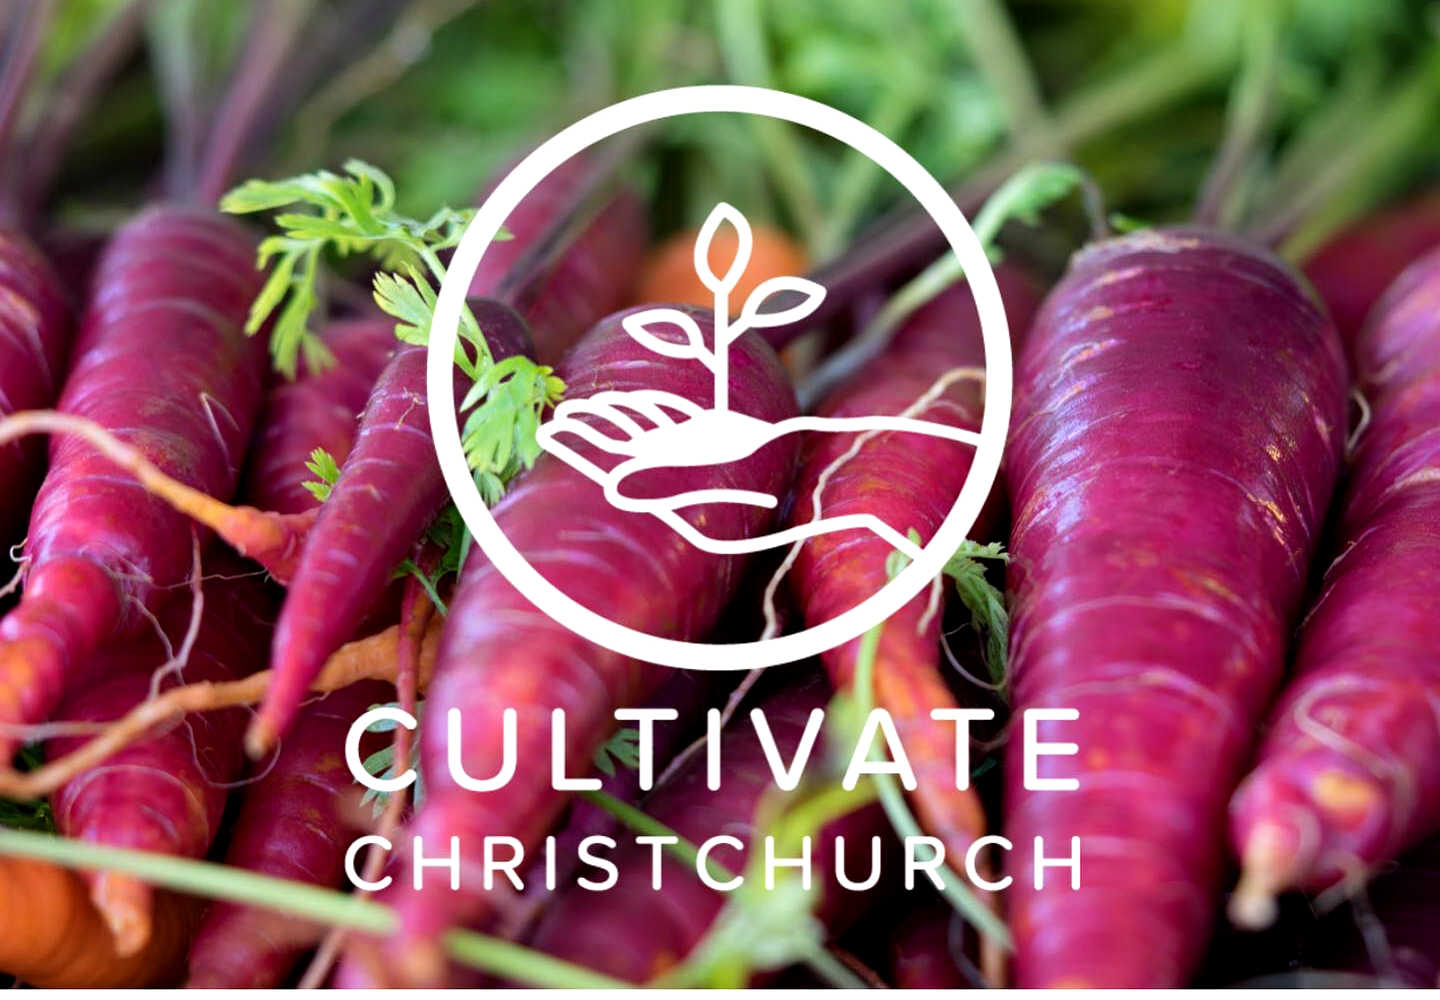 Cultivate Christchurch @CultivateChCh